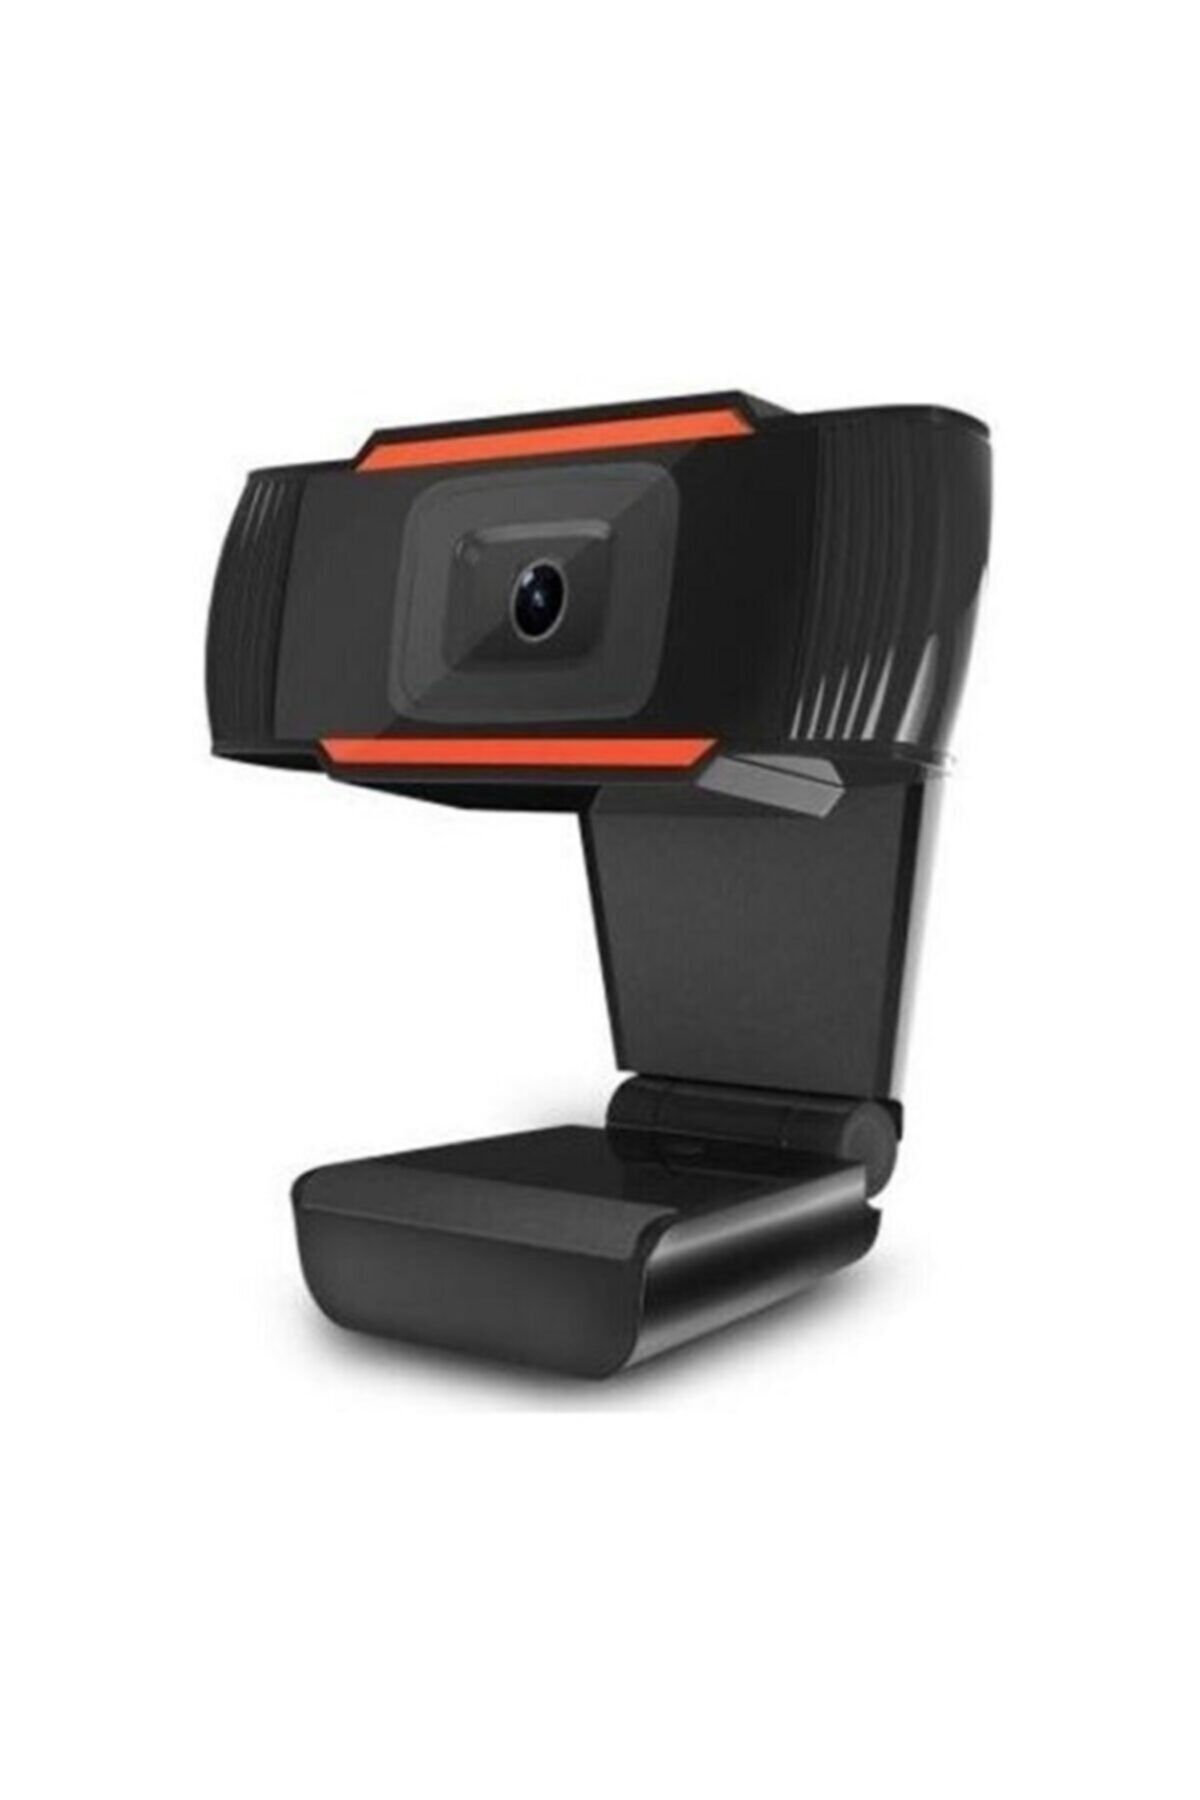 webcam hıgh soluıtıon Mikrofonlu Webcam Kamera Bilgisayar Pc Kamerası Tak Çalıştır Usb Hd 720p 1303 Hd 720p